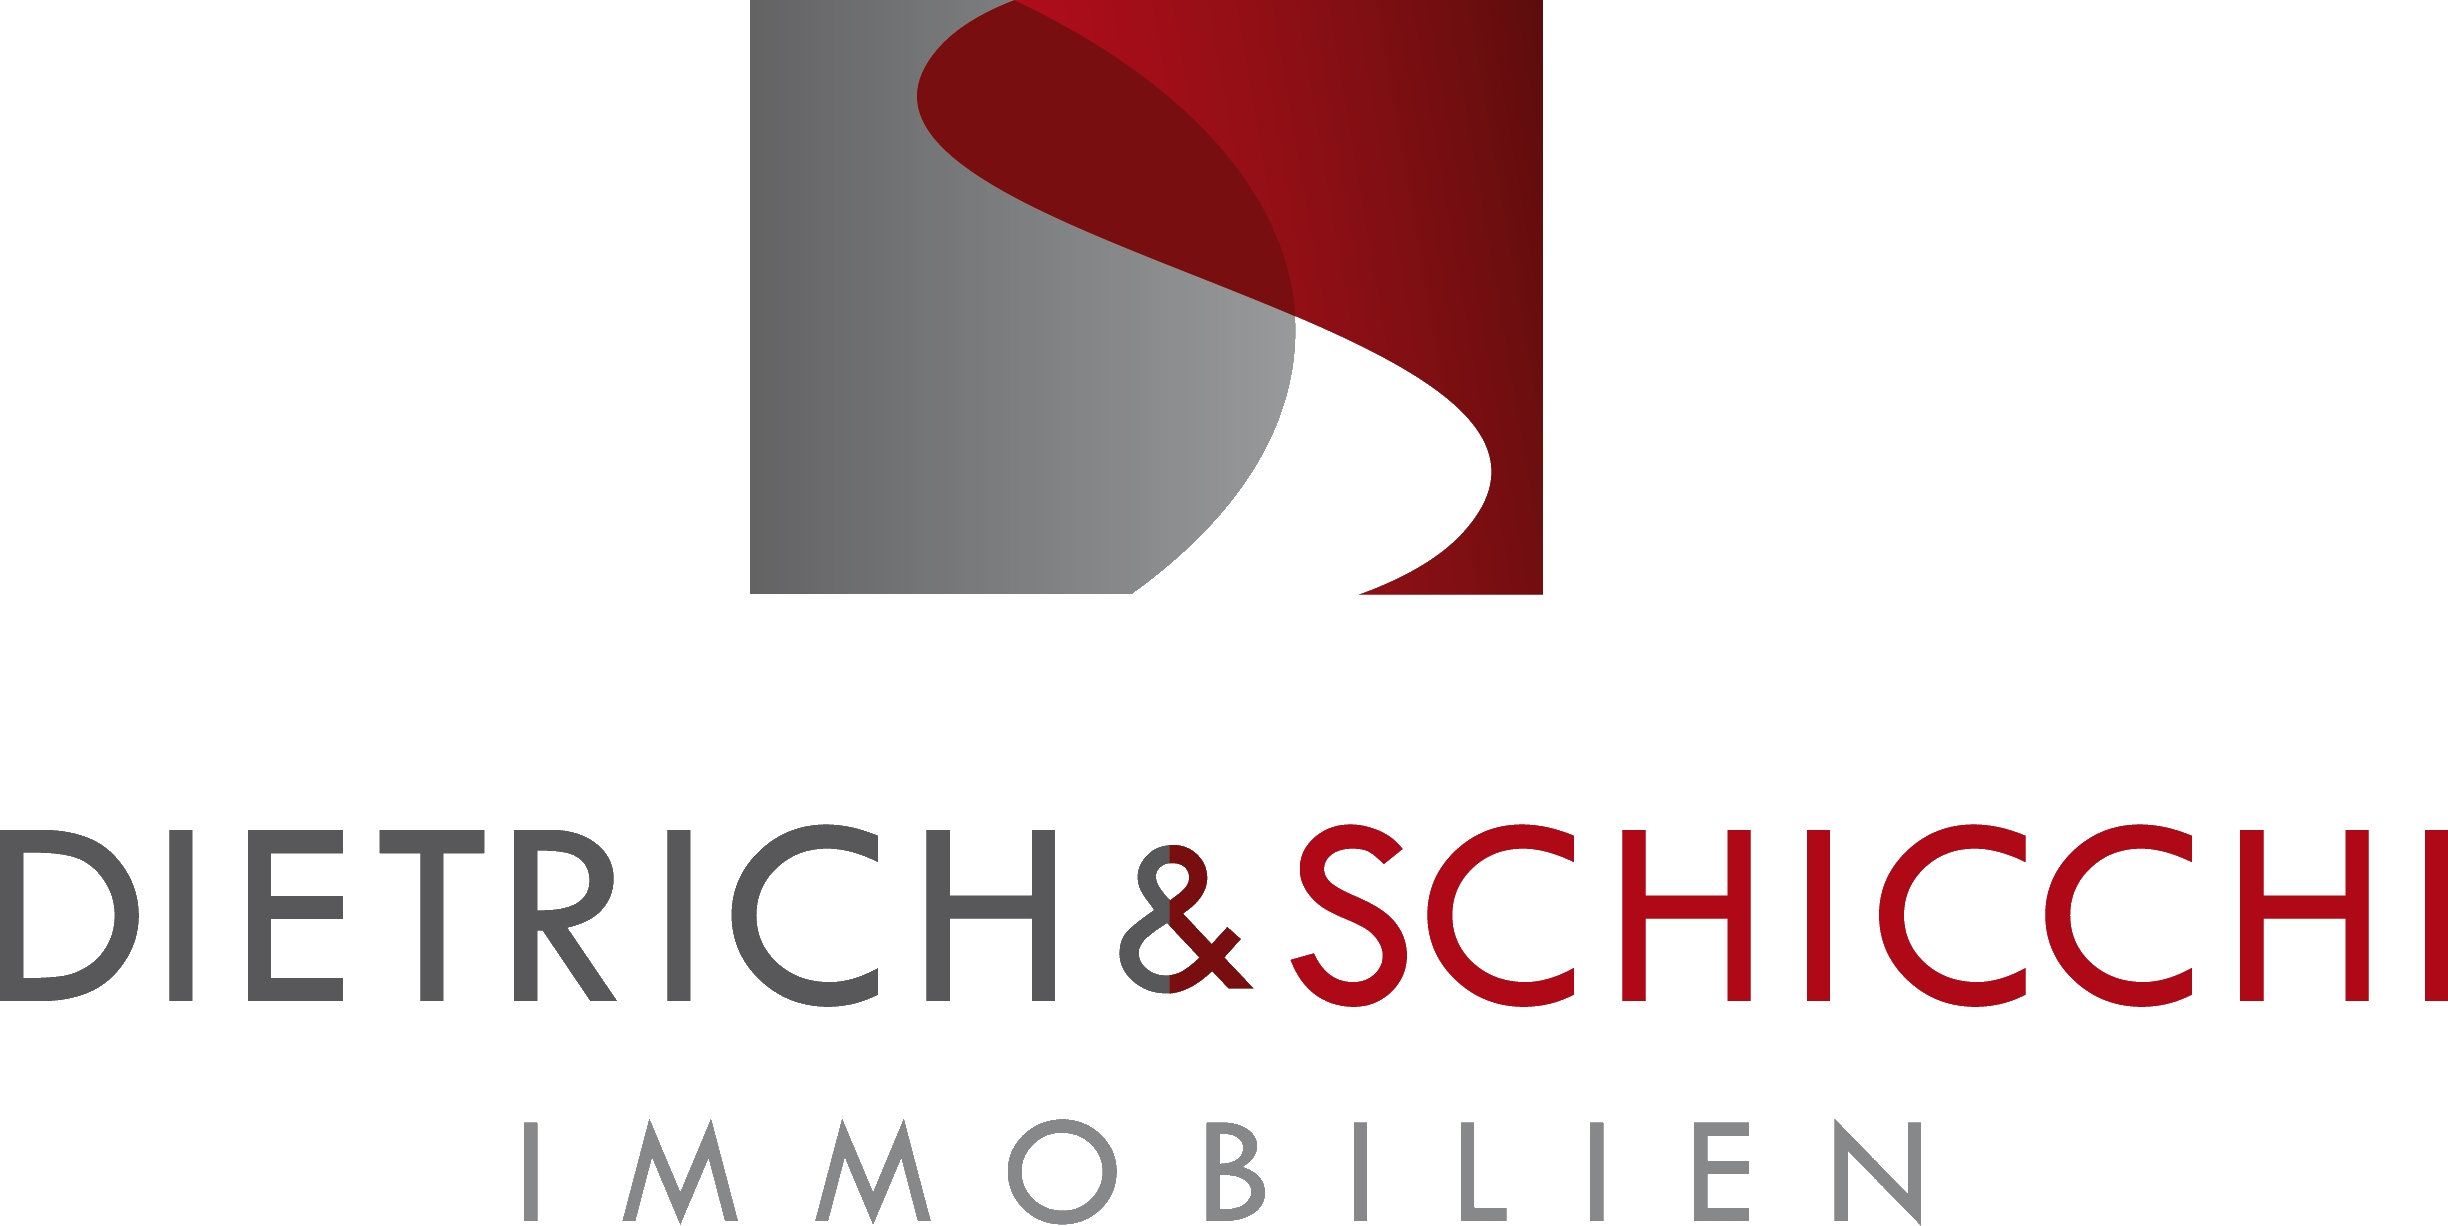 Bild 1 Dietrich & Schicchi Immobilien GbR in Bochum